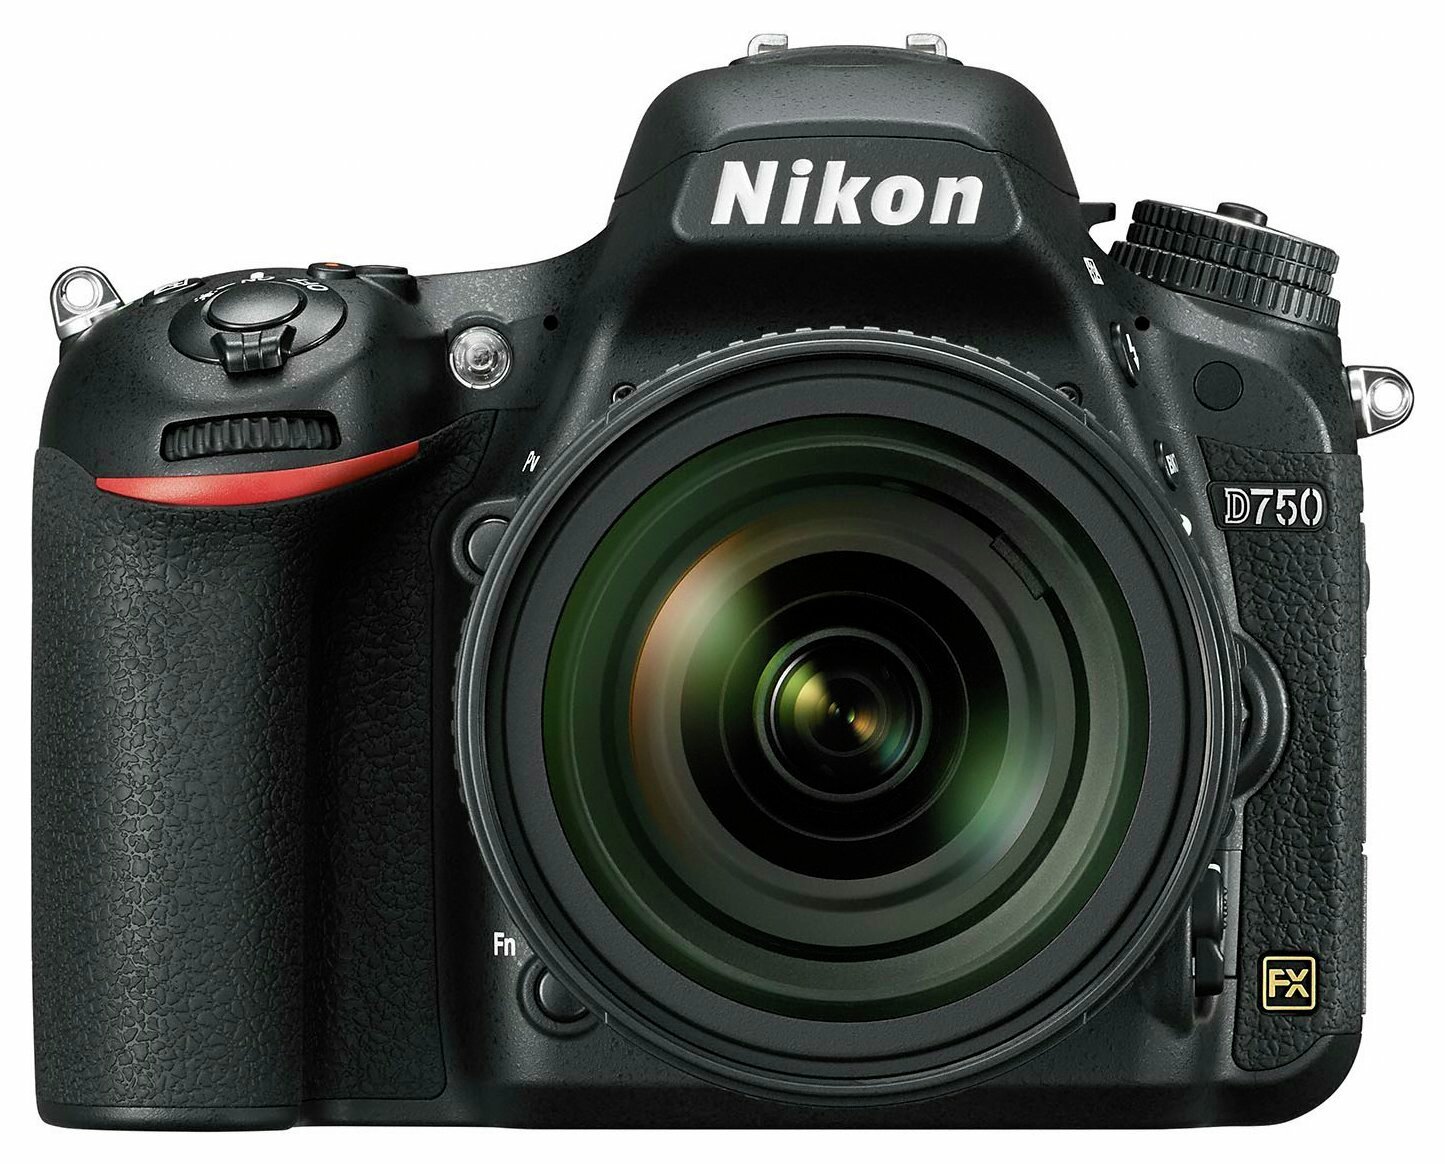 Nikon D750 DSLR Camera with AF-S 24-85mm Lens Review